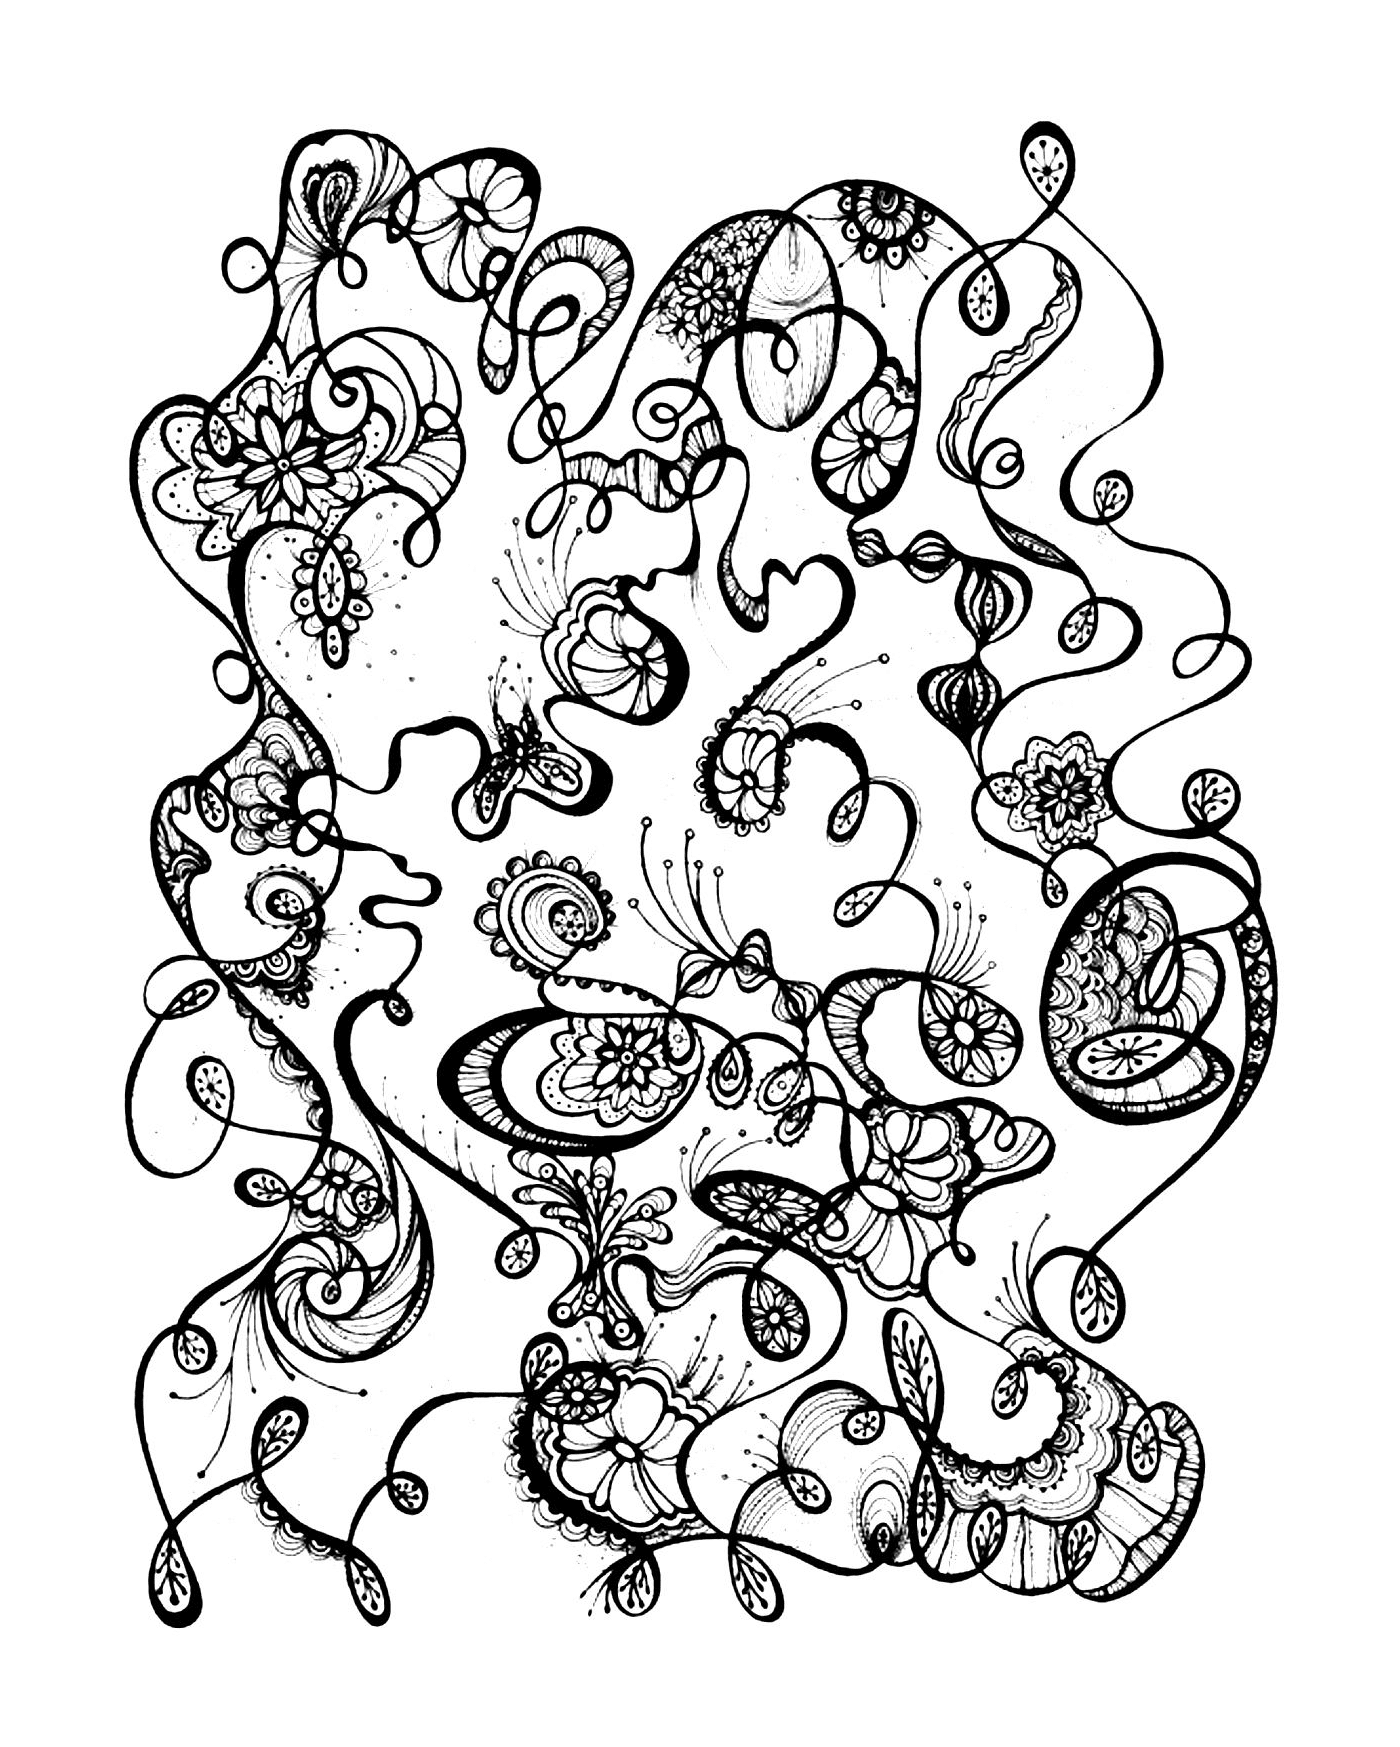  абстрактный черно-белый рисунок с цветами 